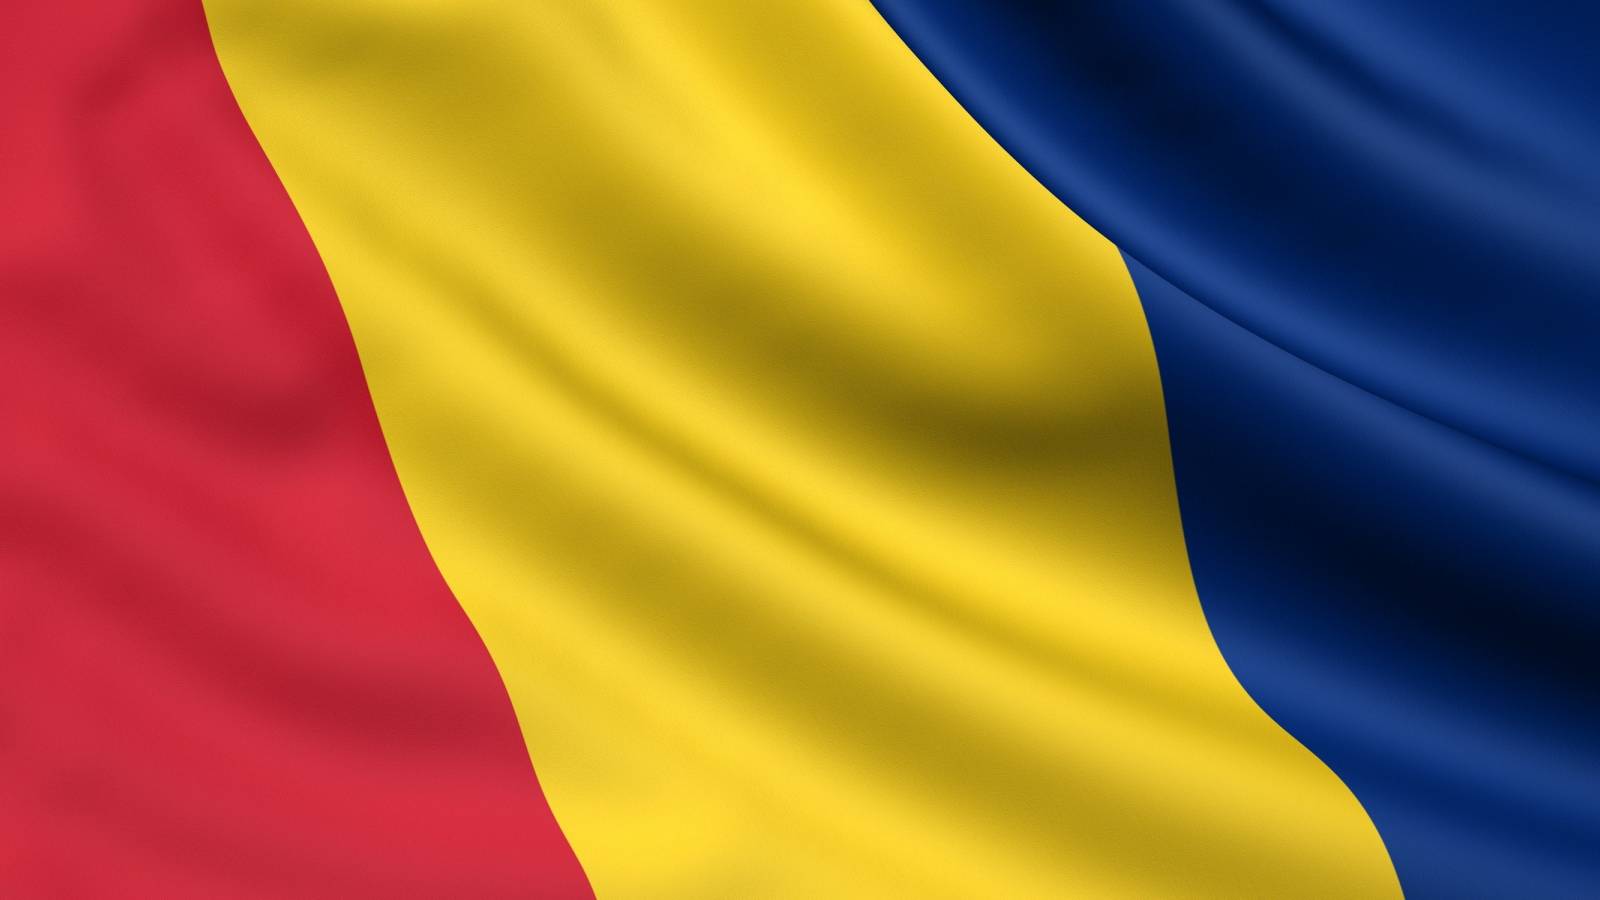 La quatrième dose du vaccin anti-COVID est officiellement administrée en Roumanie